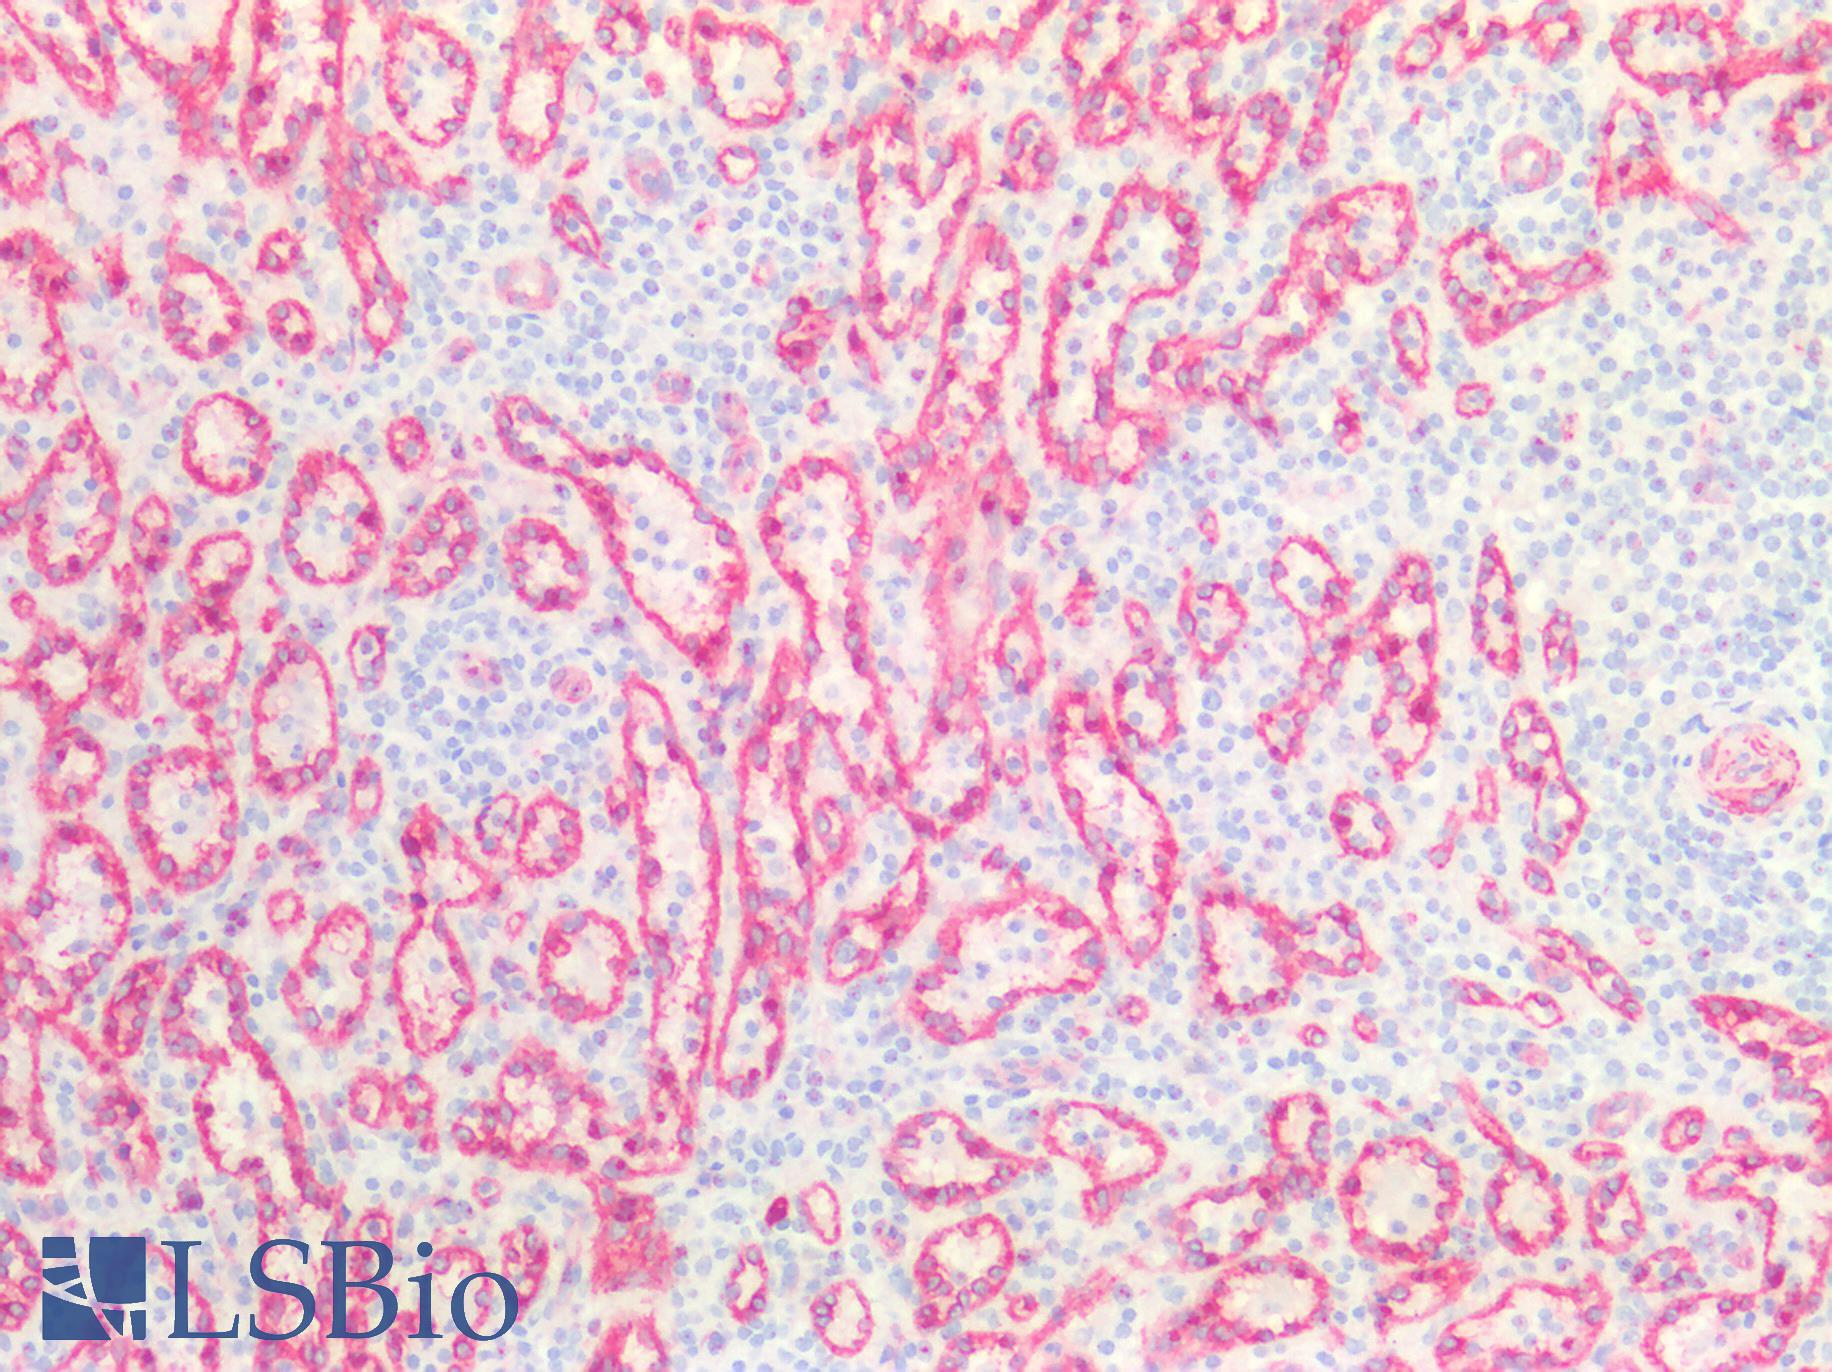 CAV1 / Caveolin 1 Antibody - Human Spleen: Formalin-Fixed, Paraffin-Embedded (FFPE)